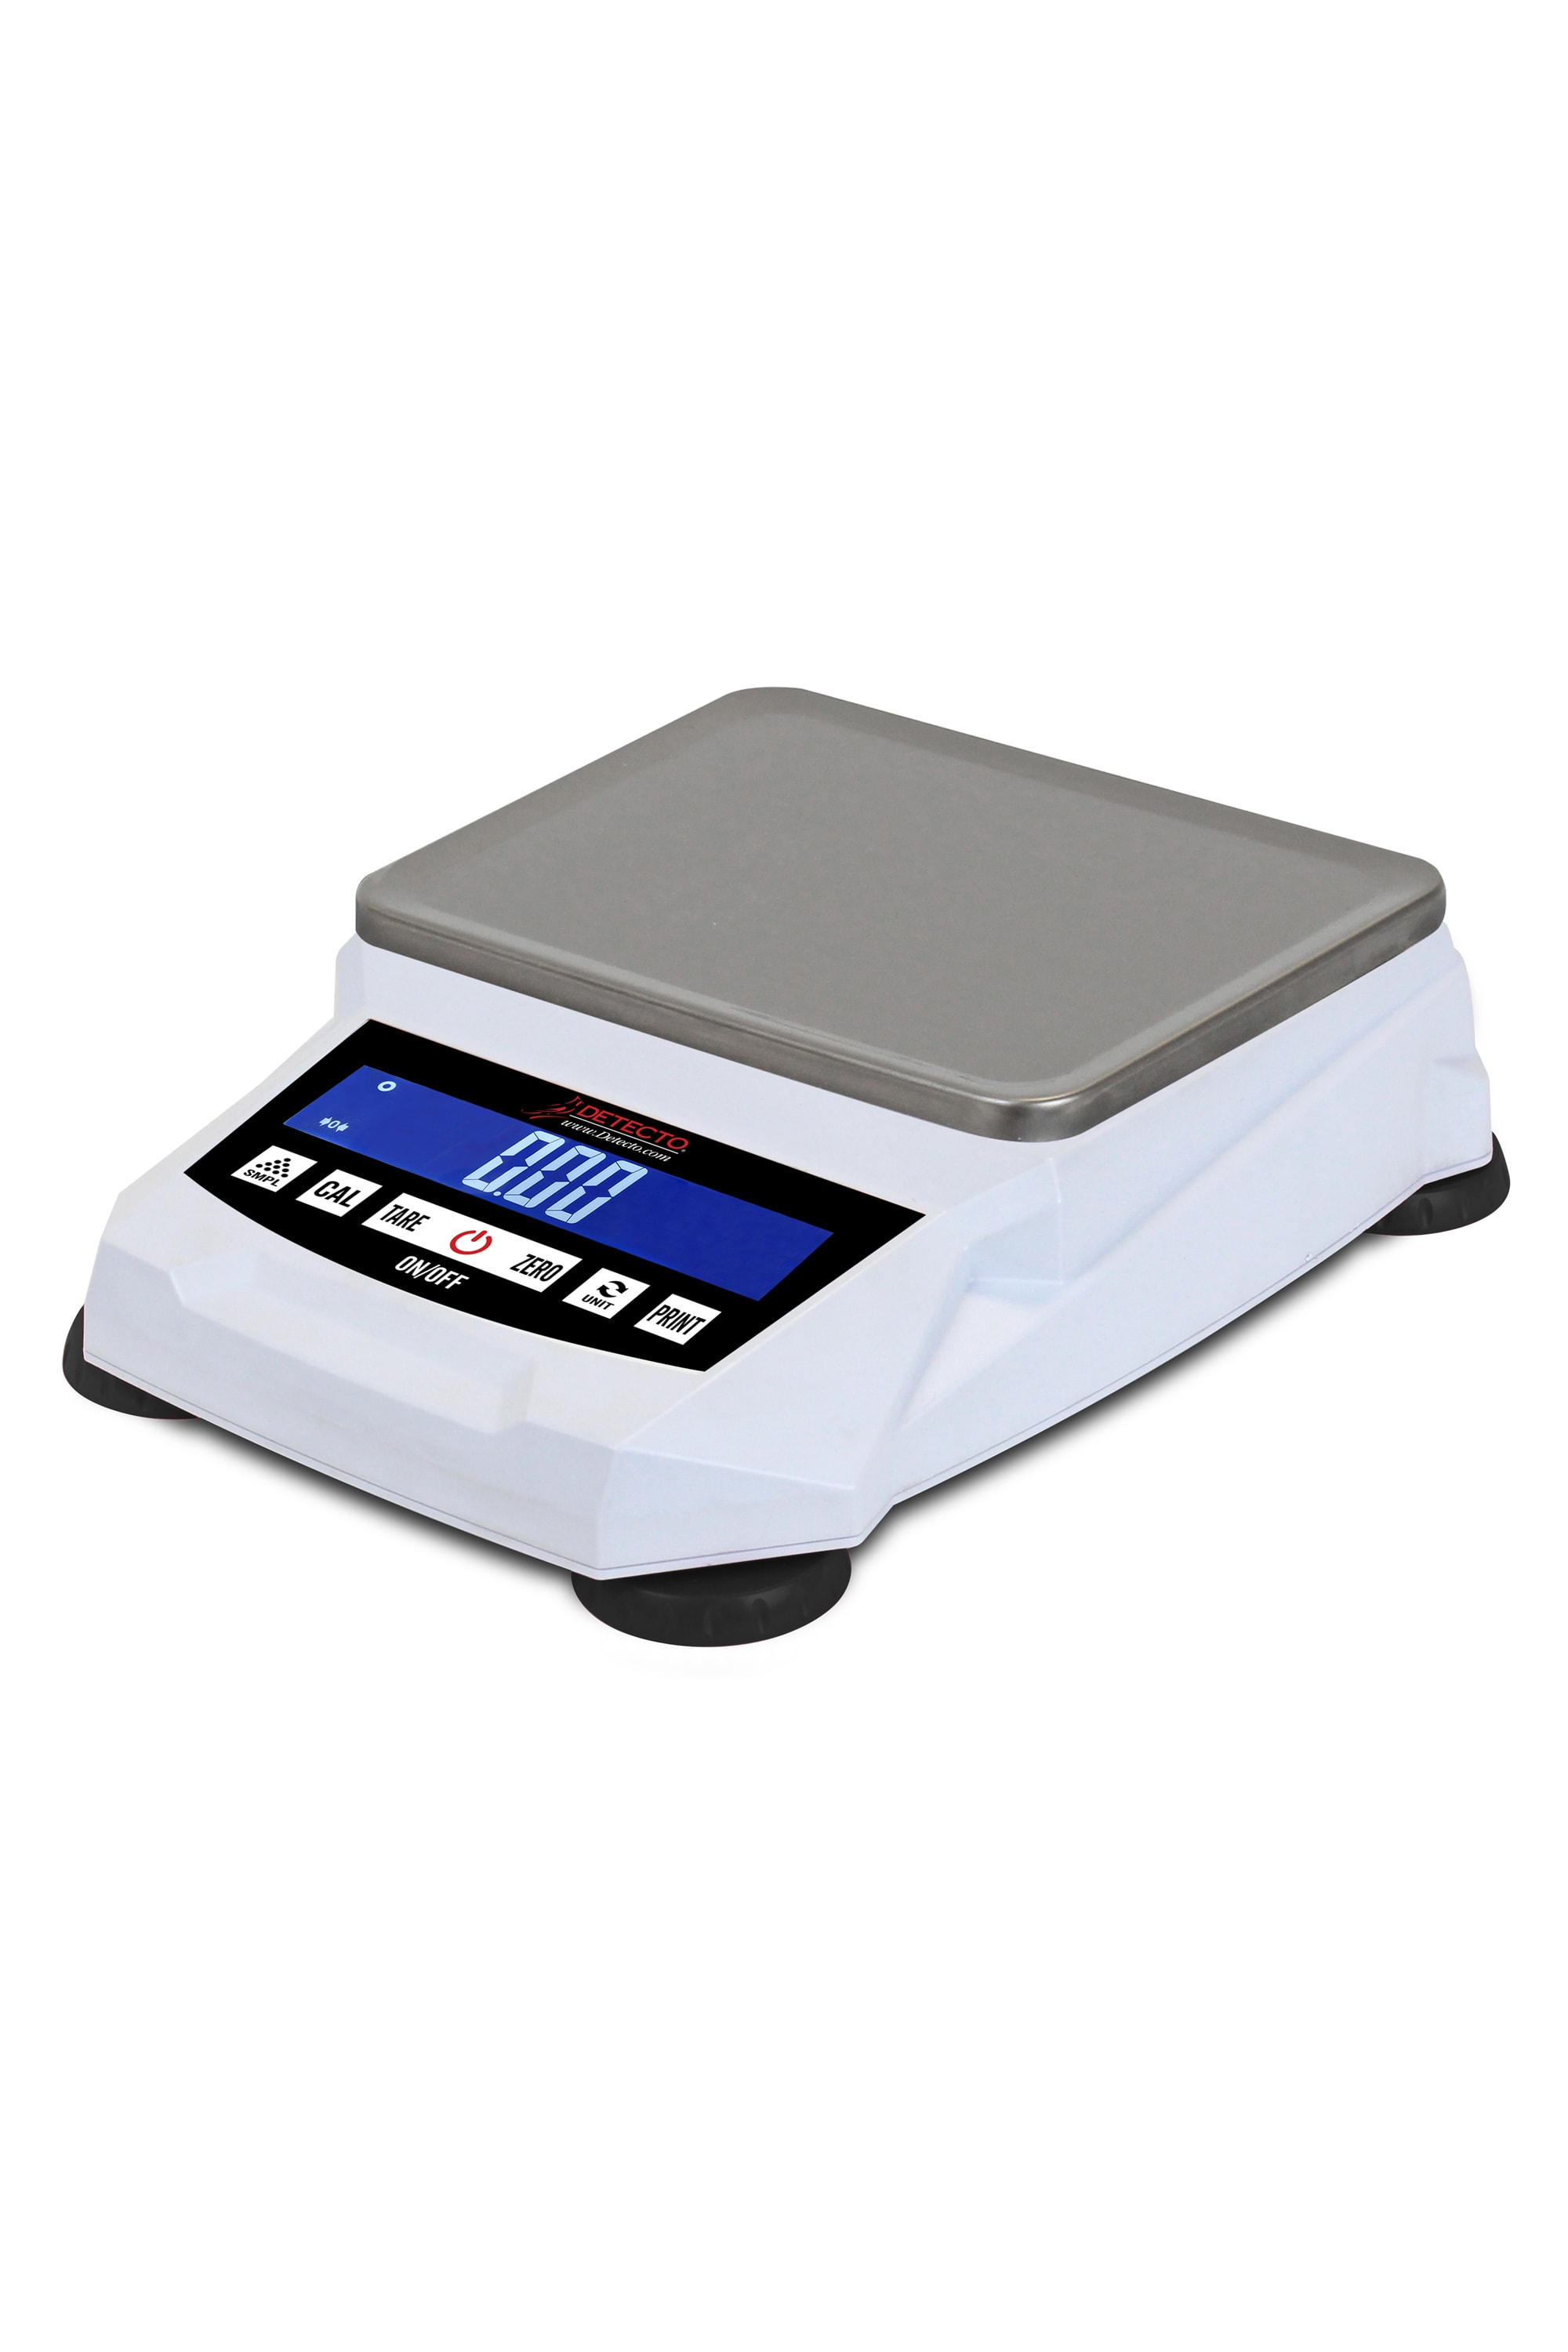 Winco SCAL-D22 22 lb Digital Portion Control Scale - 6 Square